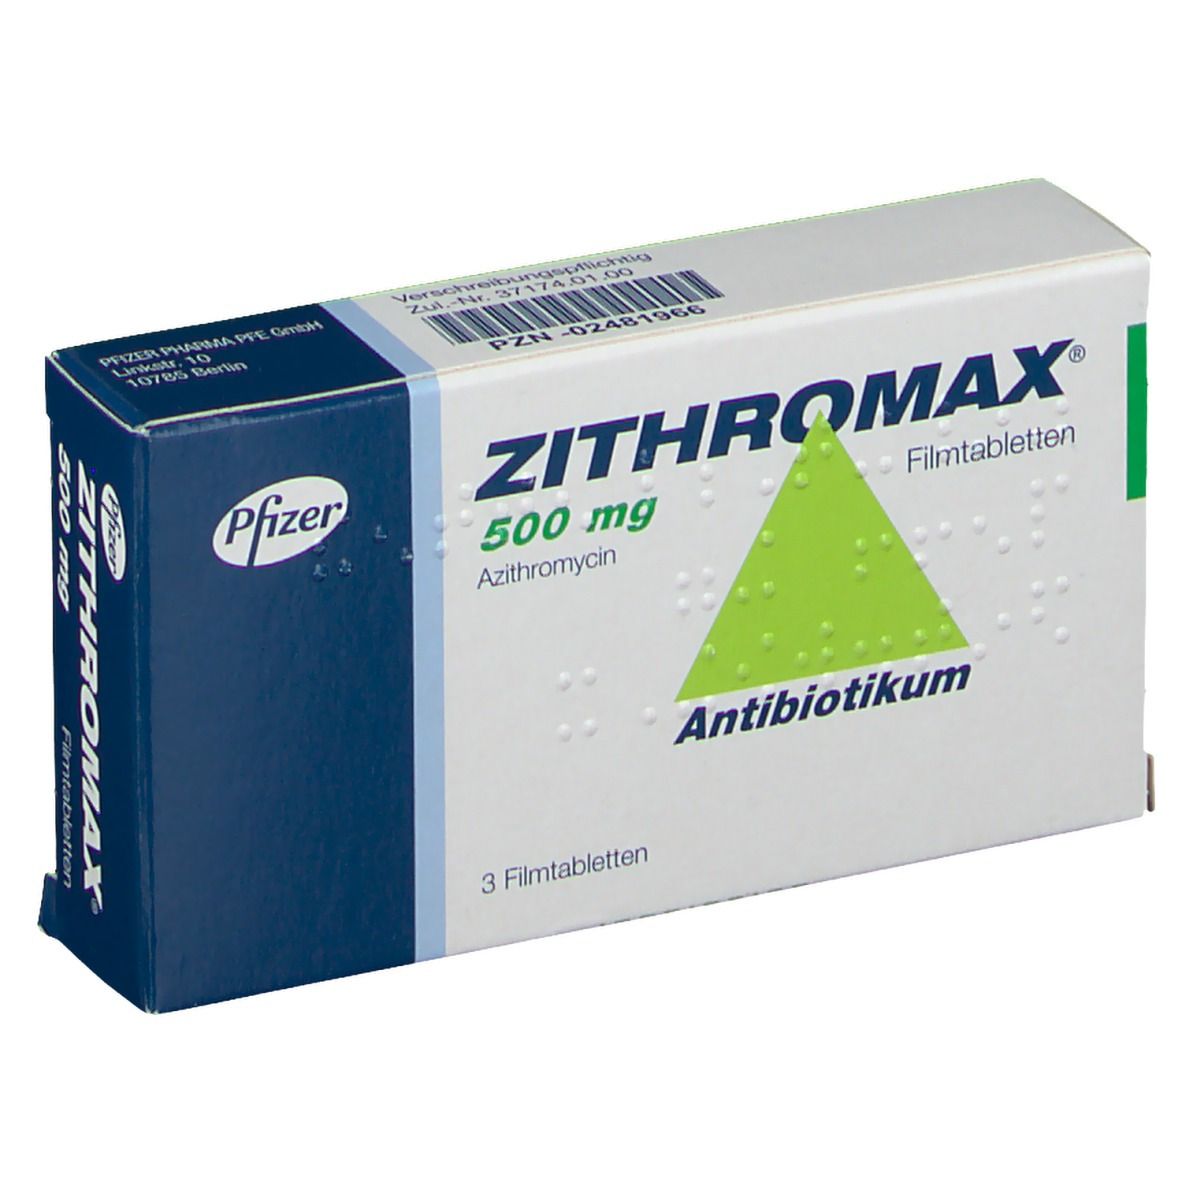 Azitromycine Zithromax 500Mg kopen